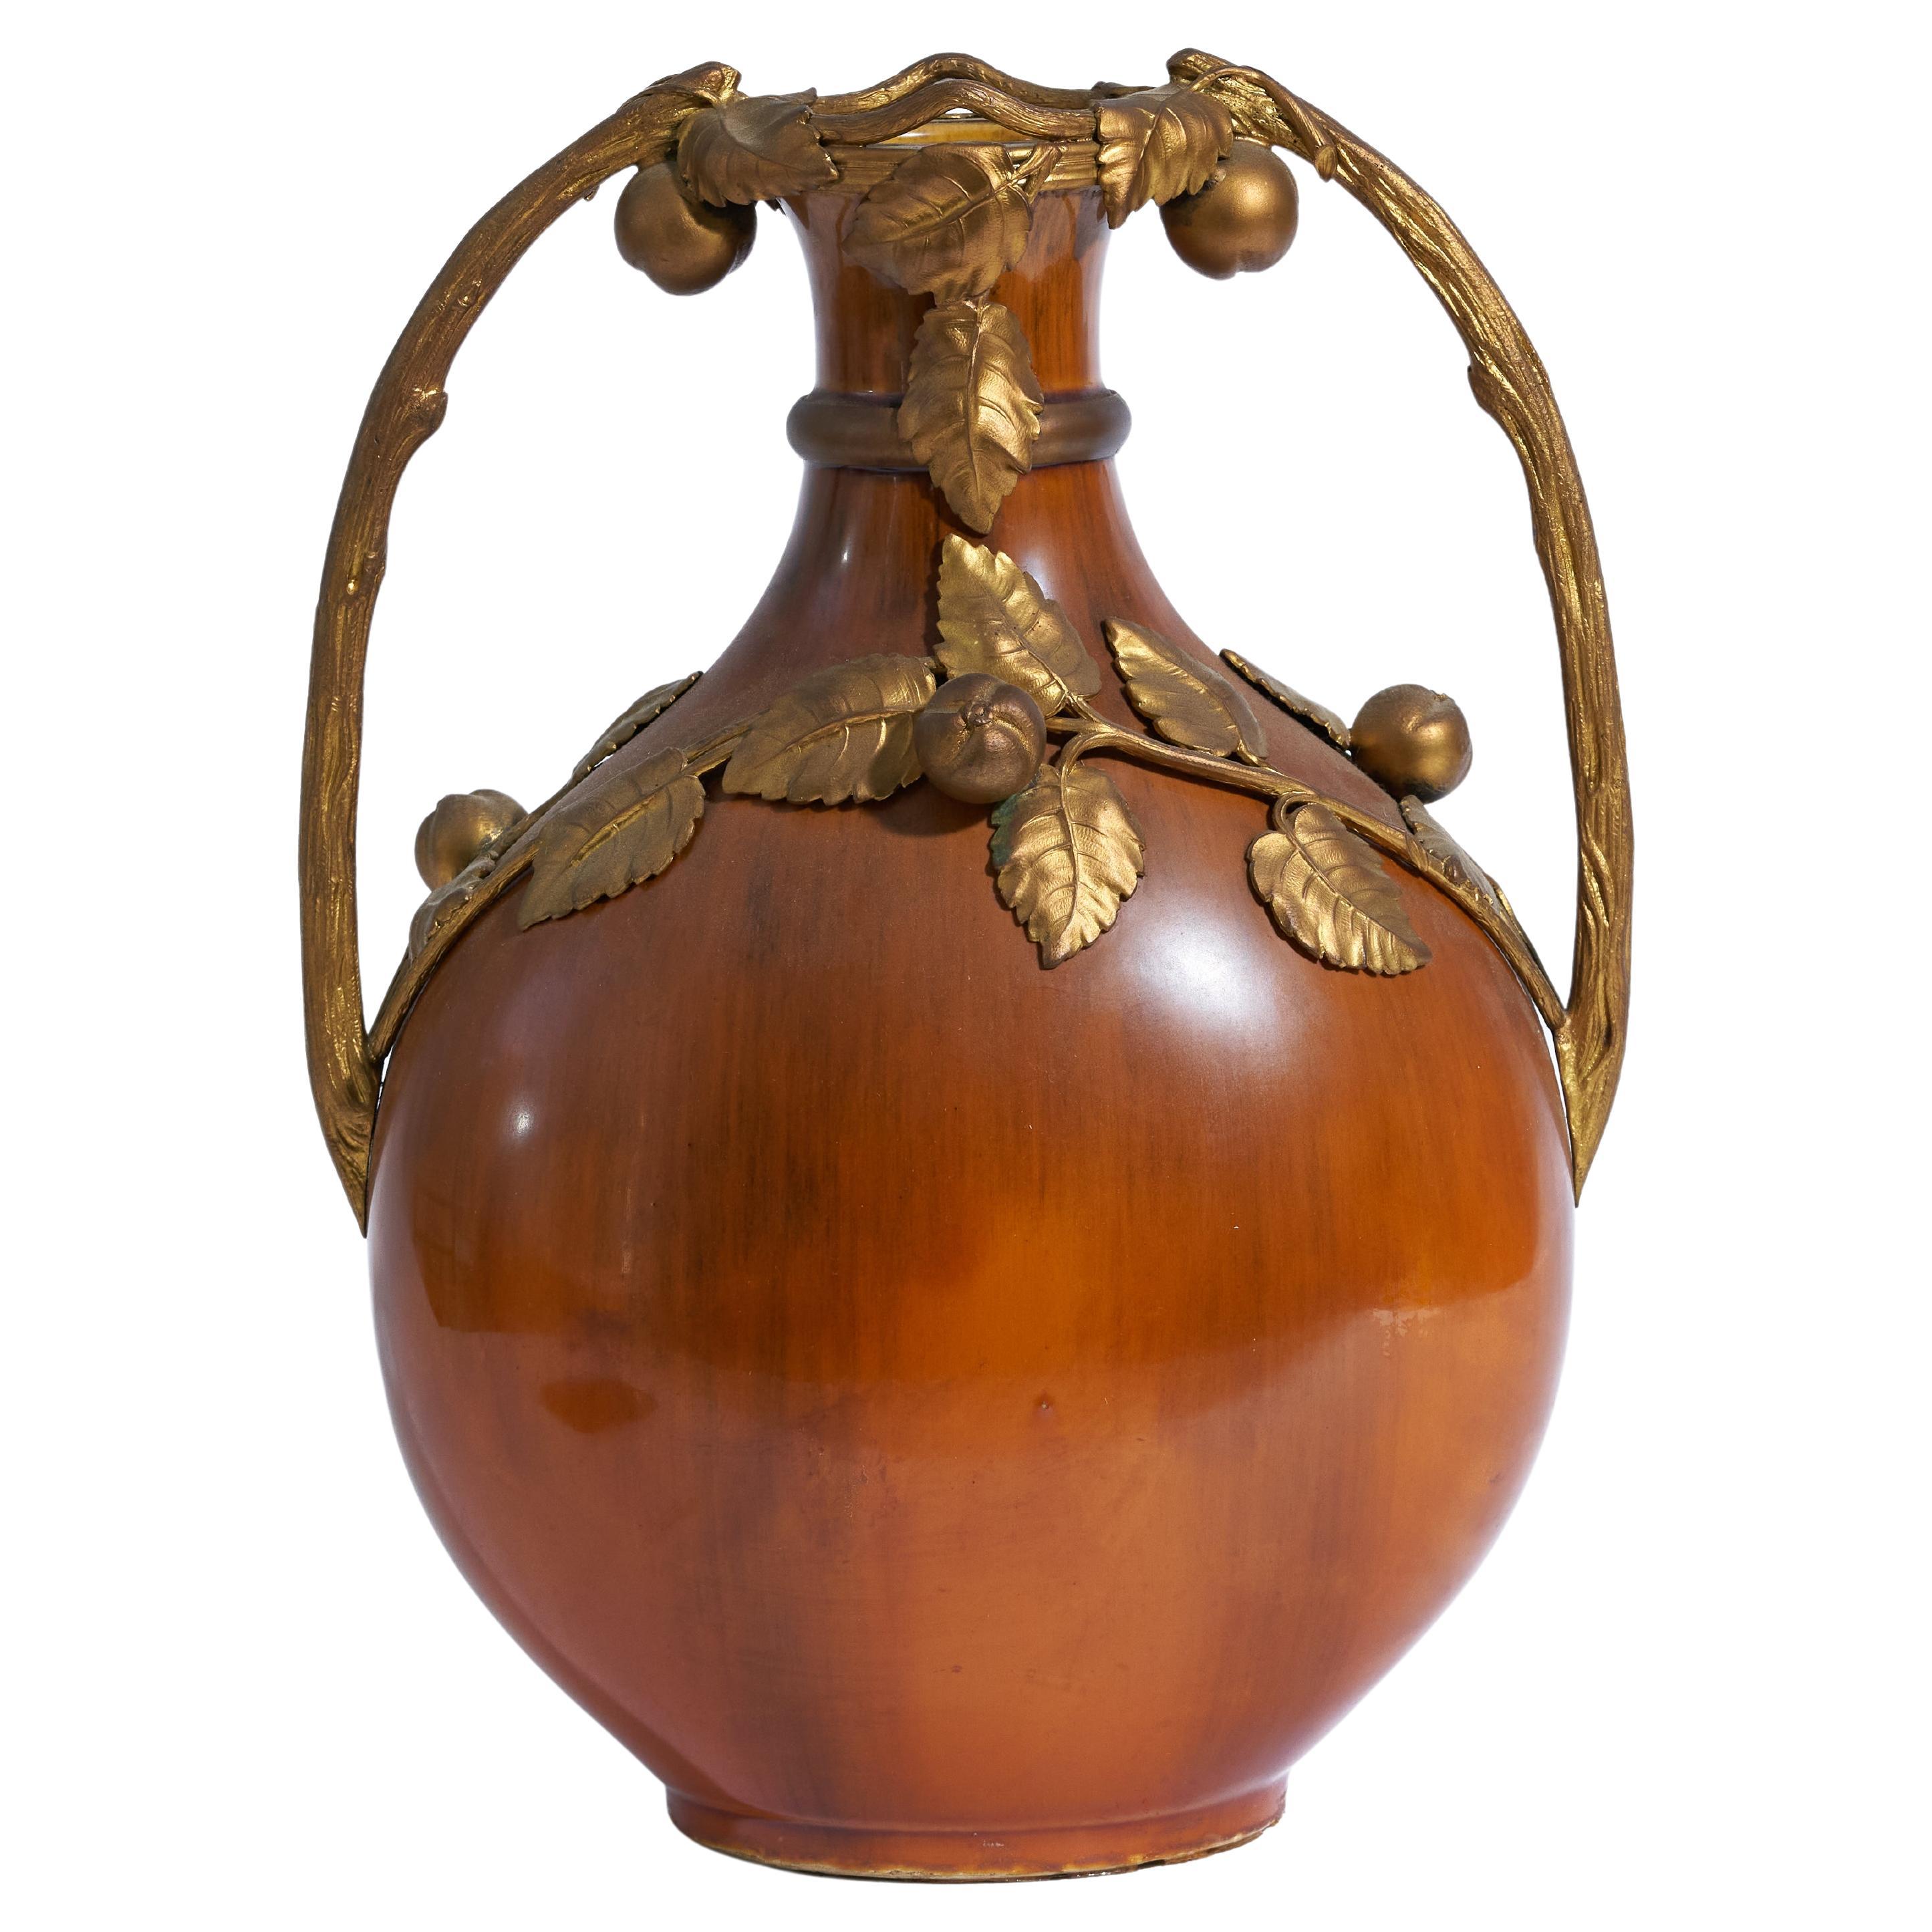 Signed Paul Jean Milet, Bronze-Mounted Art Nouveau-Period Sevres Art Pottery Vas